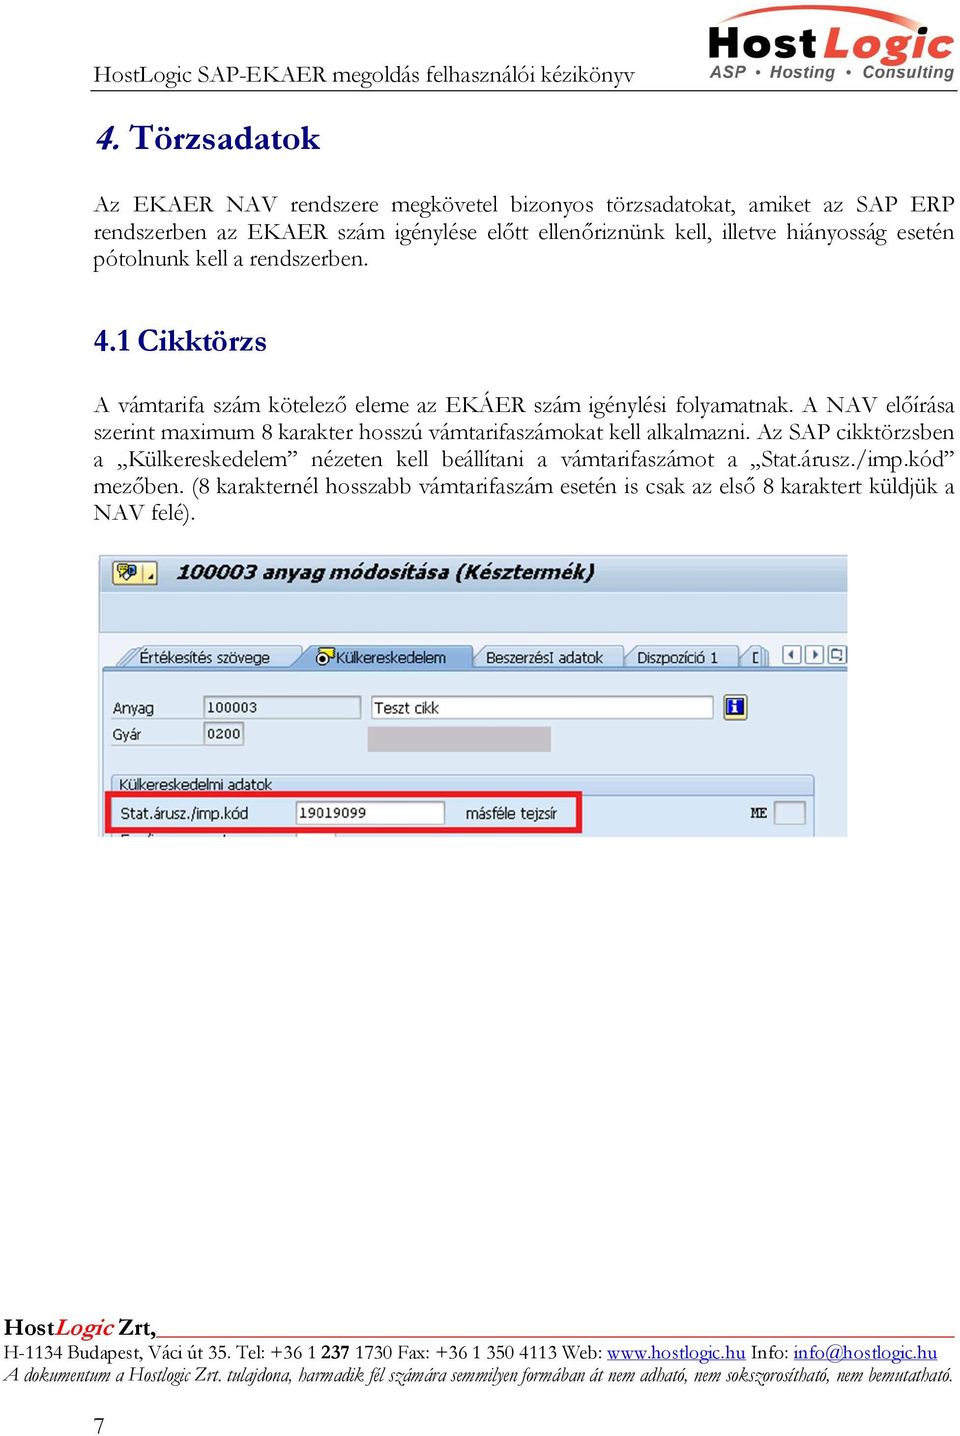 Felhasználói kézikönyv HostLogic SAP EKAER 5.0 megoldáshoz - PDF Ingyenes  letöltés